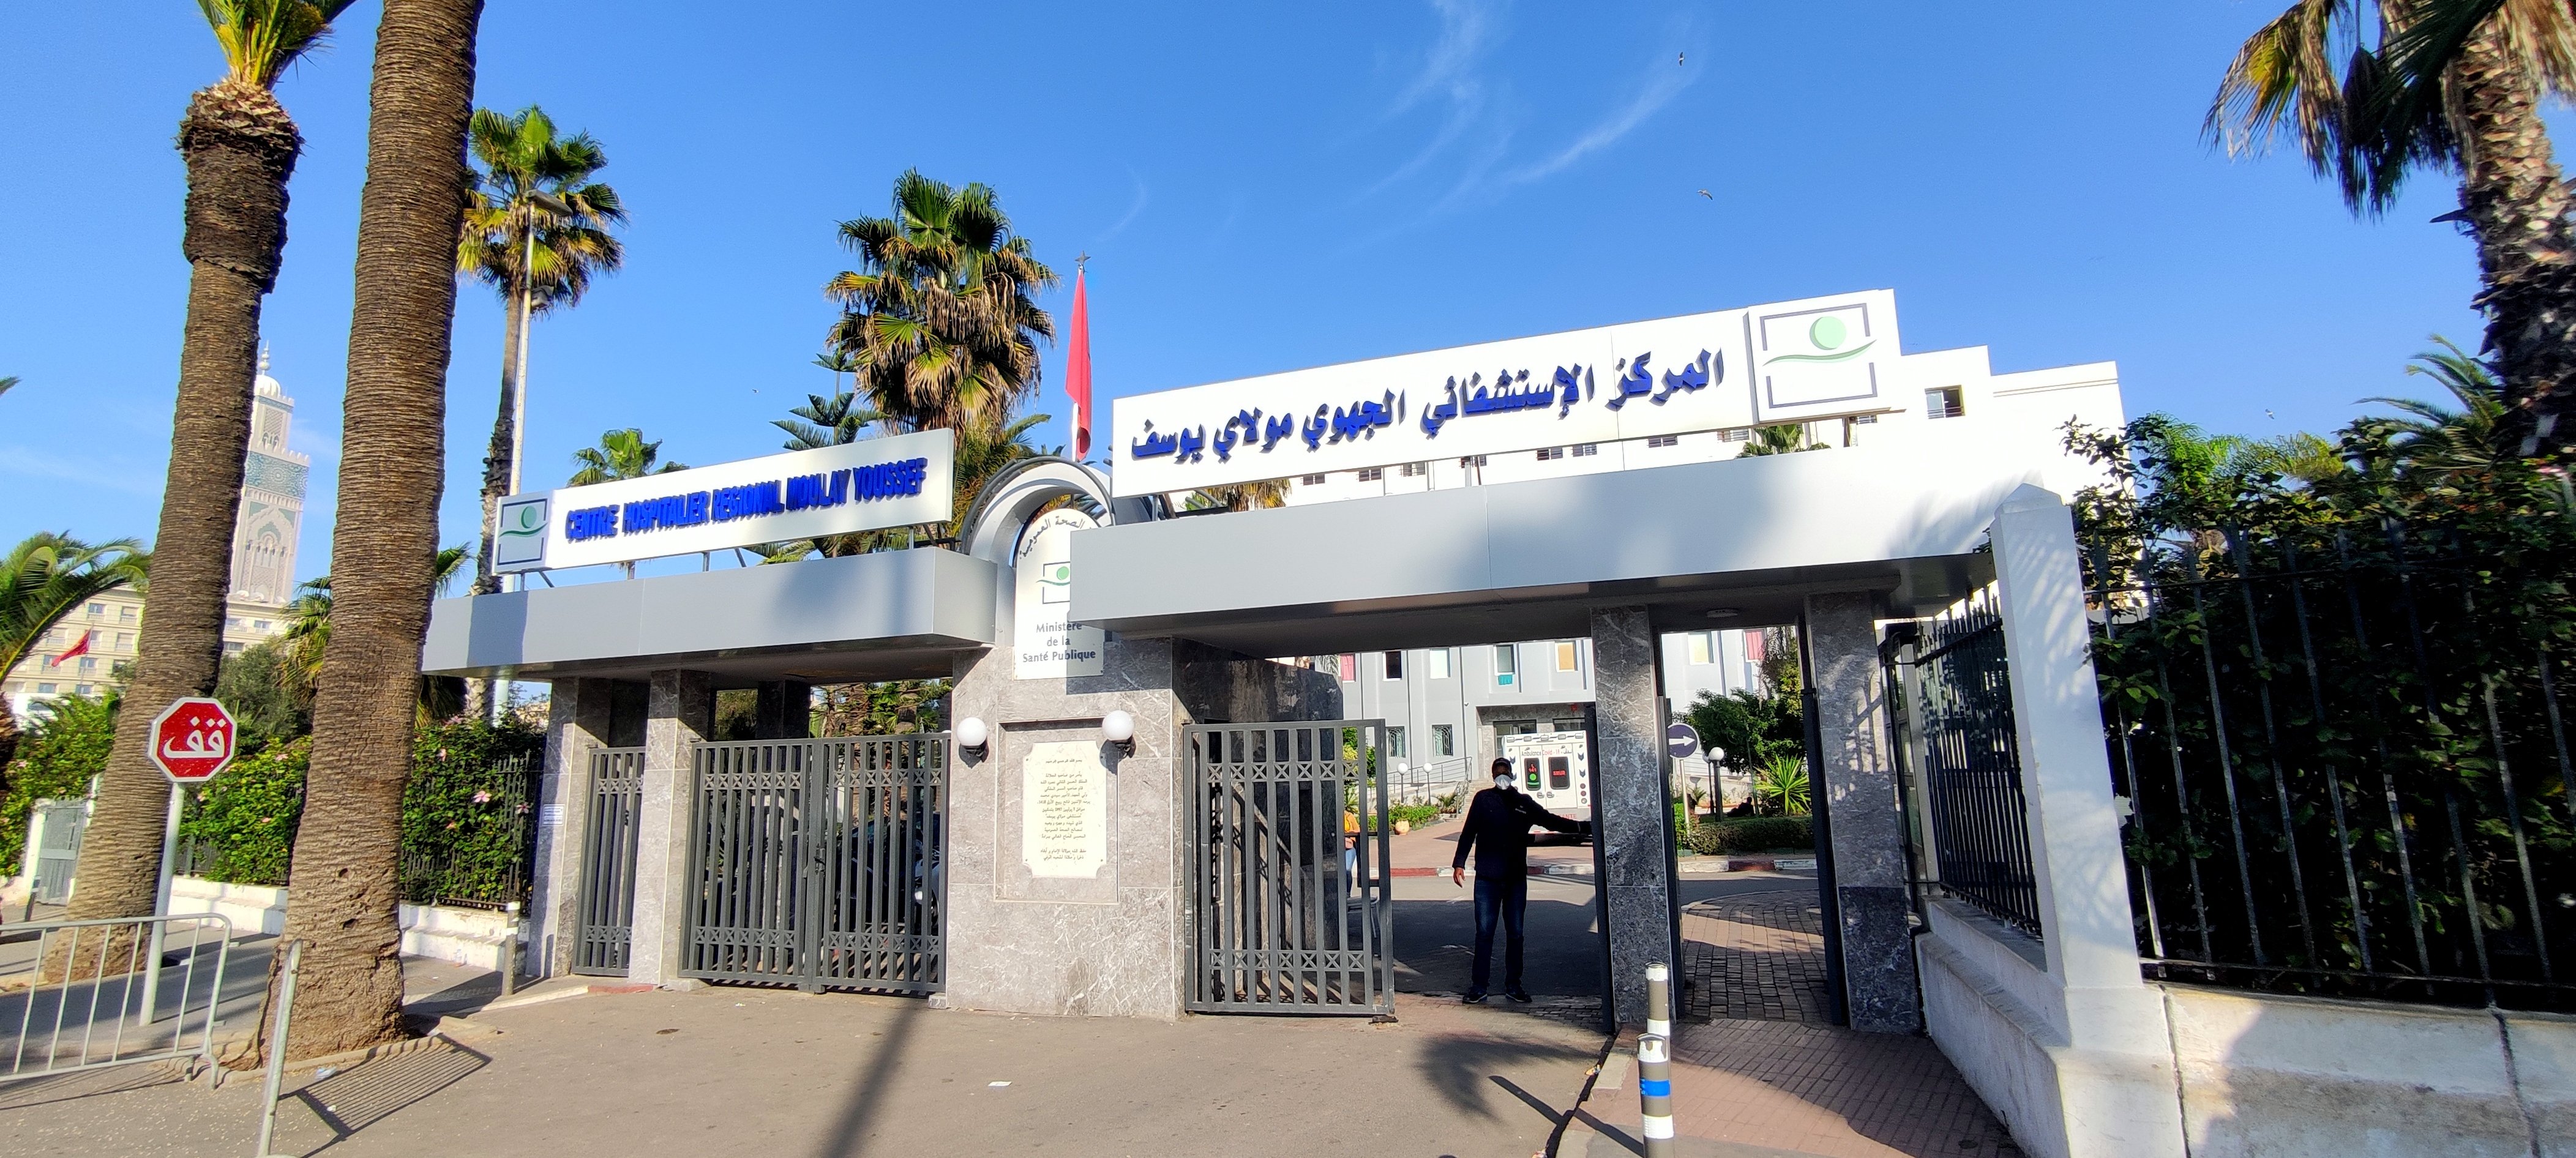 Covid-19 : Augmentation des cas à Casablanca, situation toujours sous contrôle au CHR Moulay Youssef